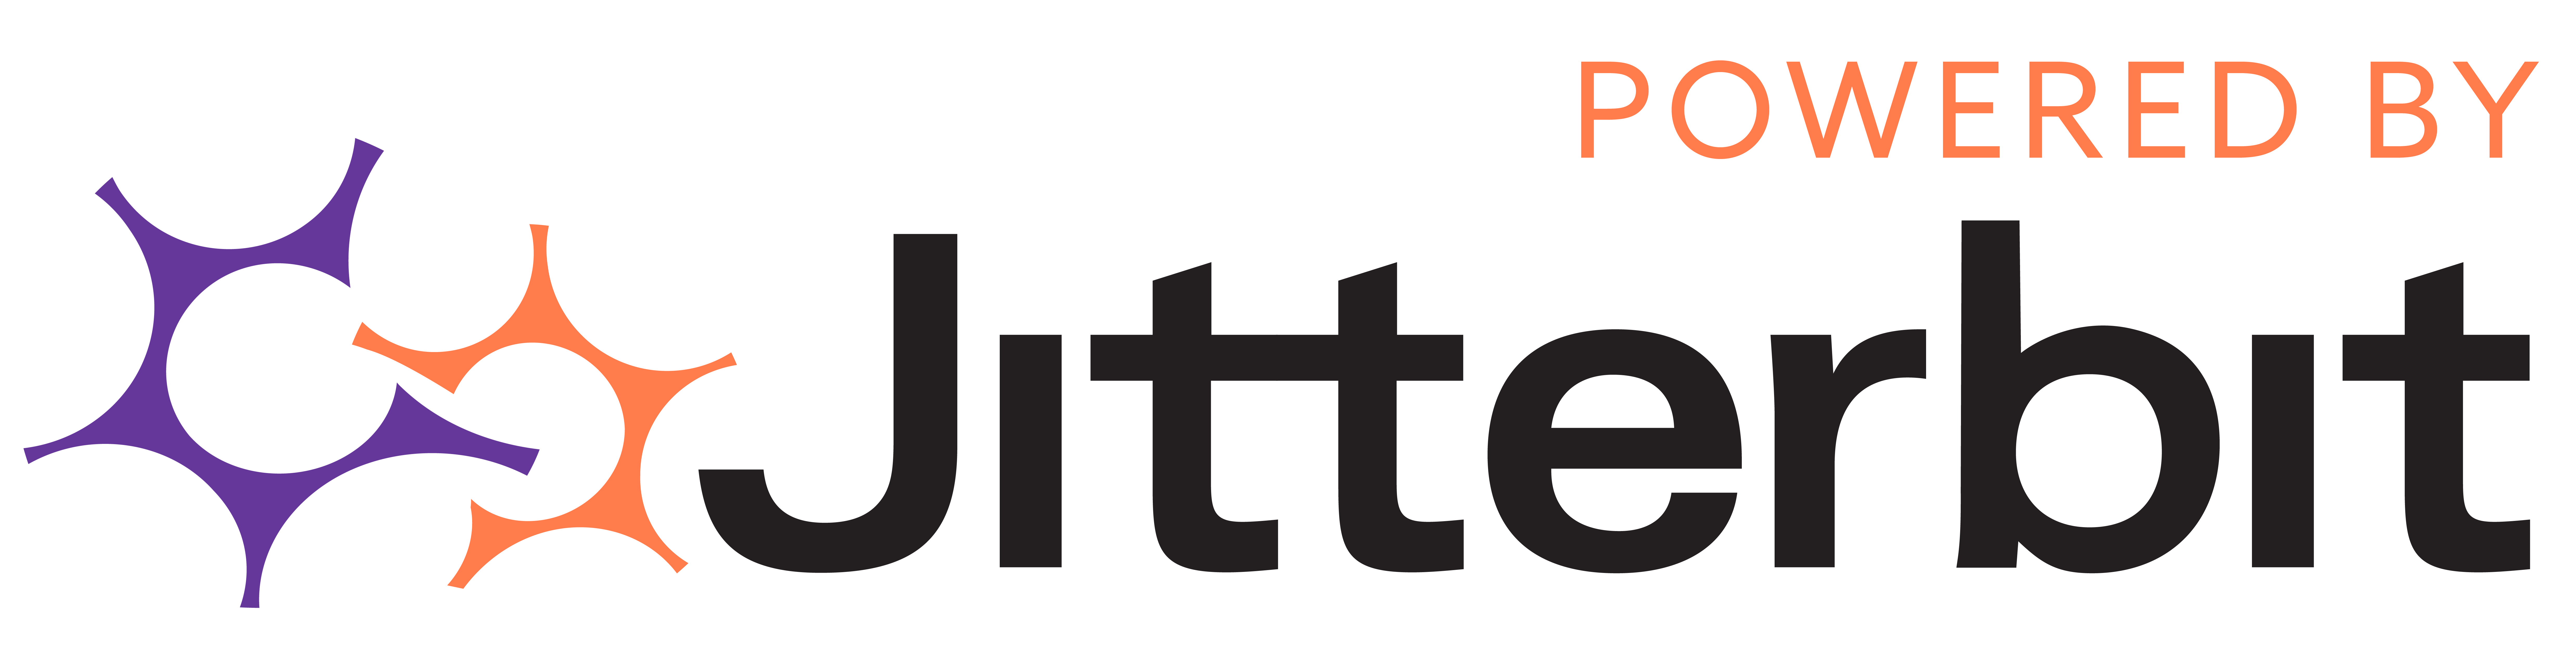 Powered by Jitterbit logo